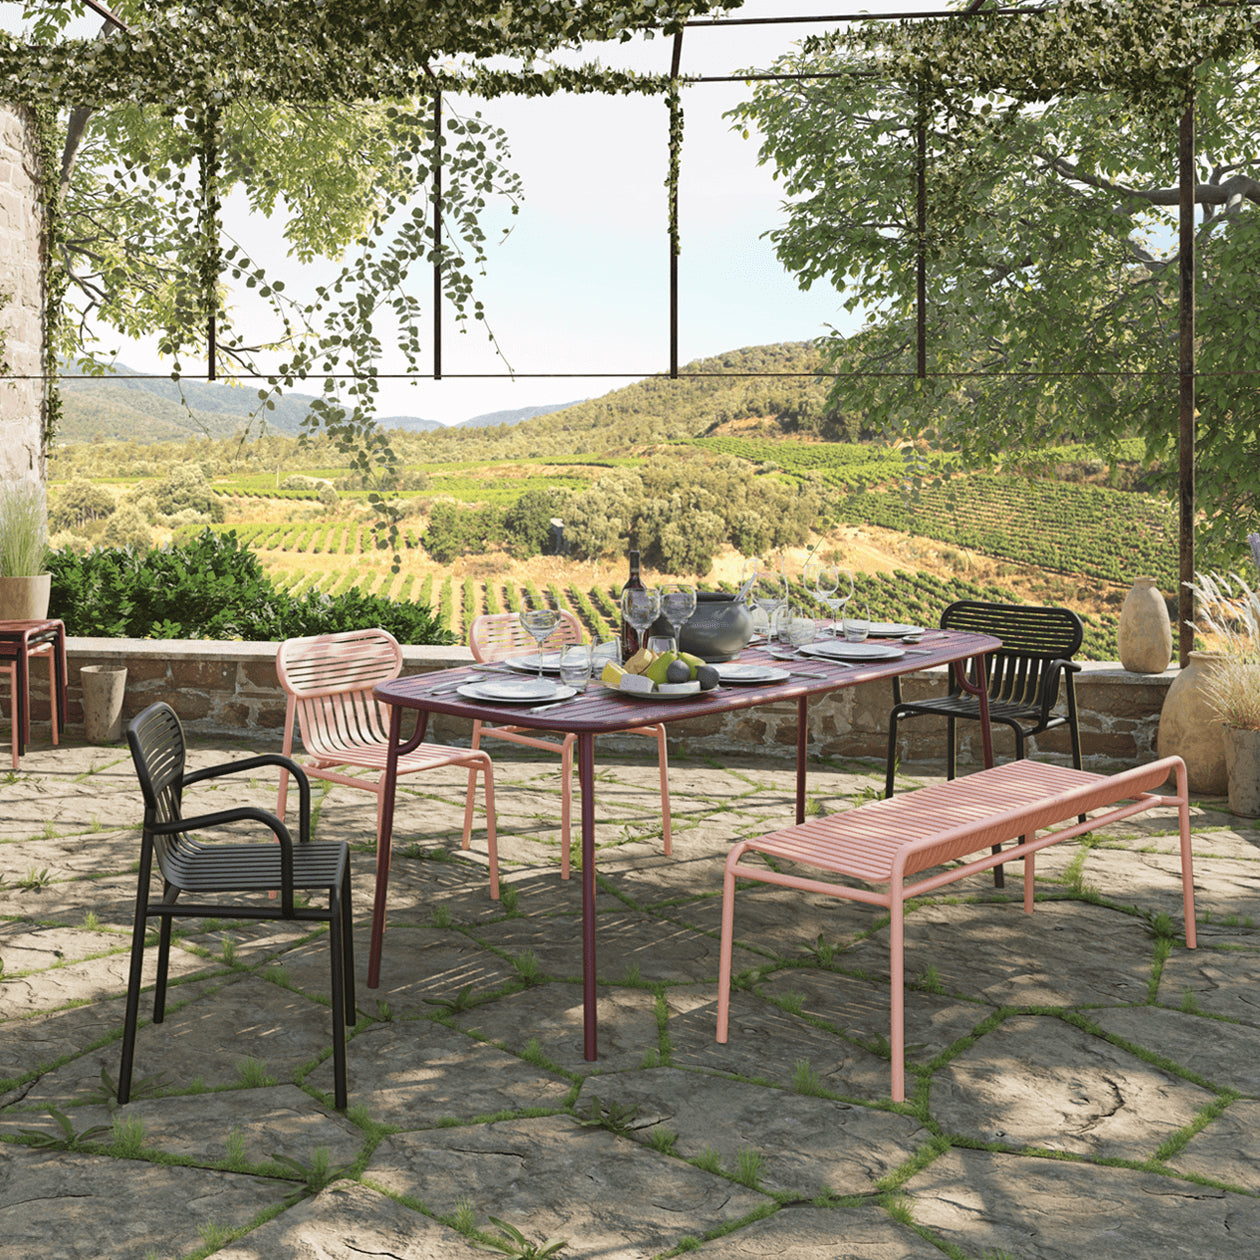 Week-End Tisch Medium in Burgundy präsentiert im Onlineshop von KAQTU Design AG. Gartentisch ist von Petite Friture